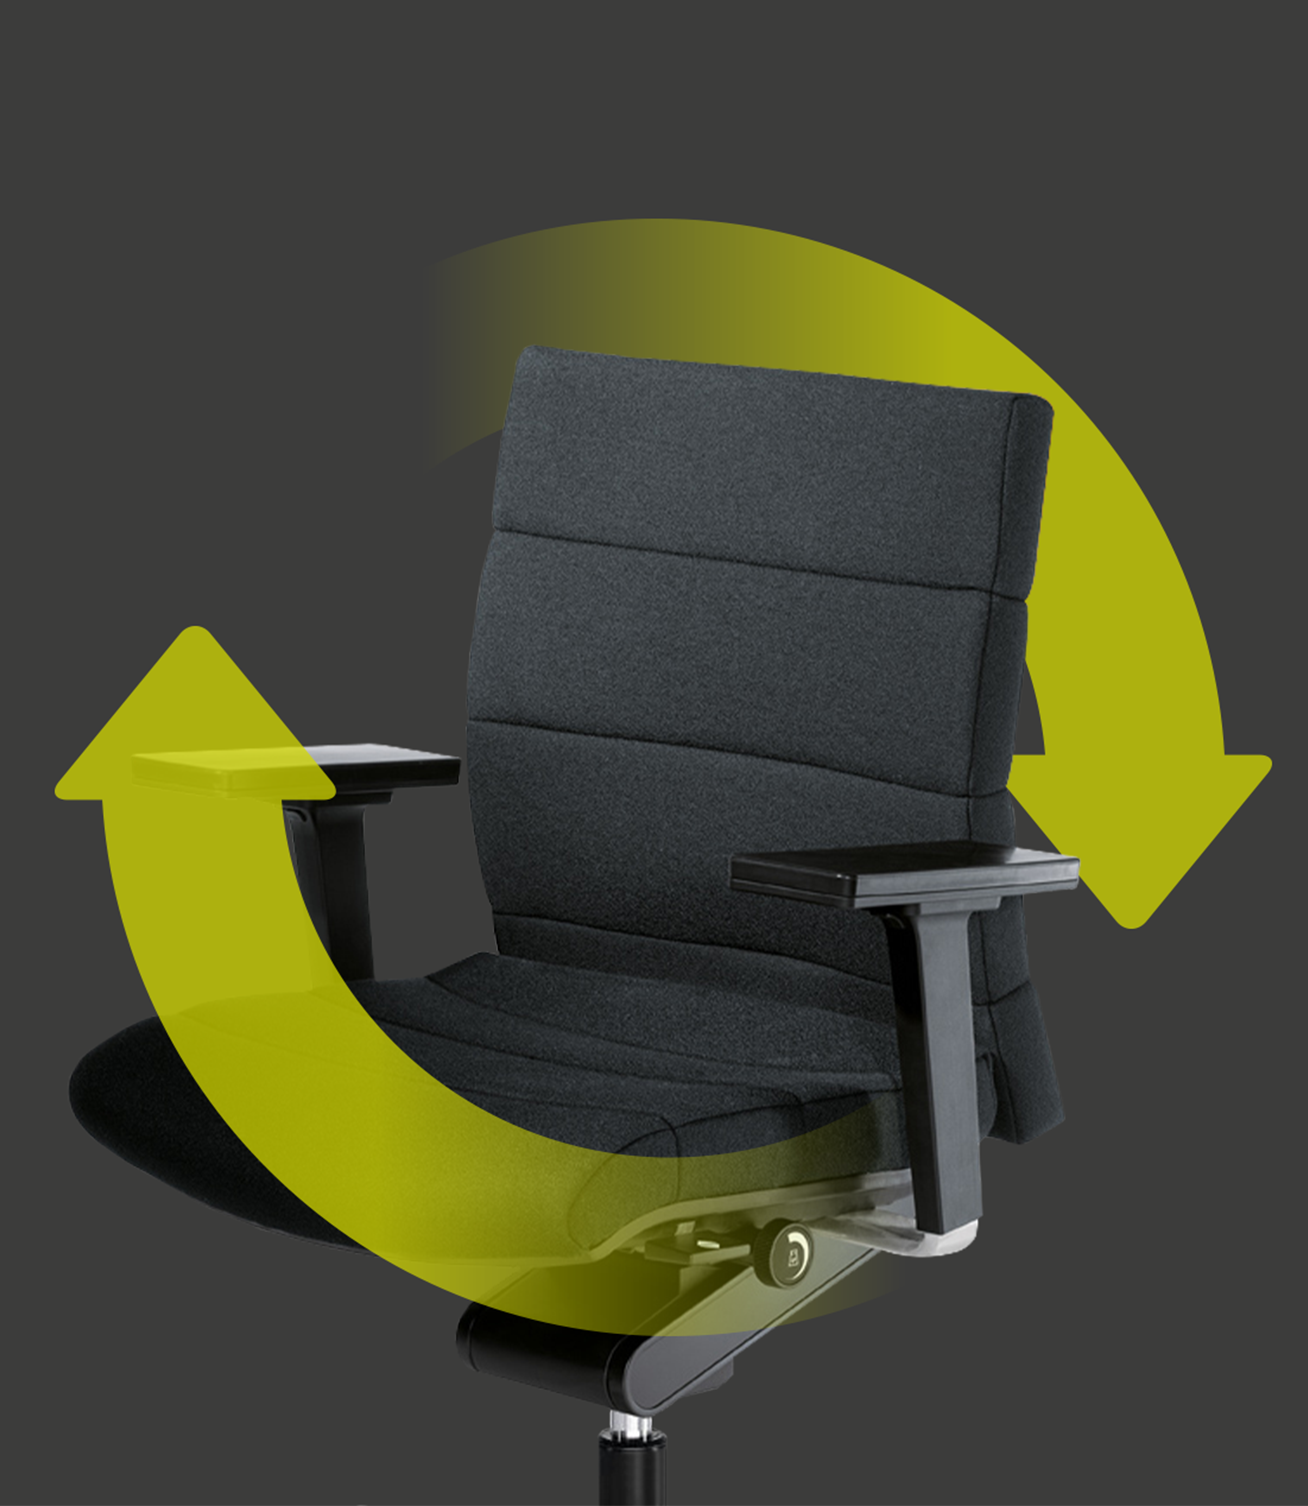 Elegante sedia da ufficio CHAMP con rivestimento del sedile e dello schienale in grigio con due frecce verdi che formano un cerchio intorno alla sedia. Le frecce indicano la sostenibilità e la riutilizzabilità della sedia.